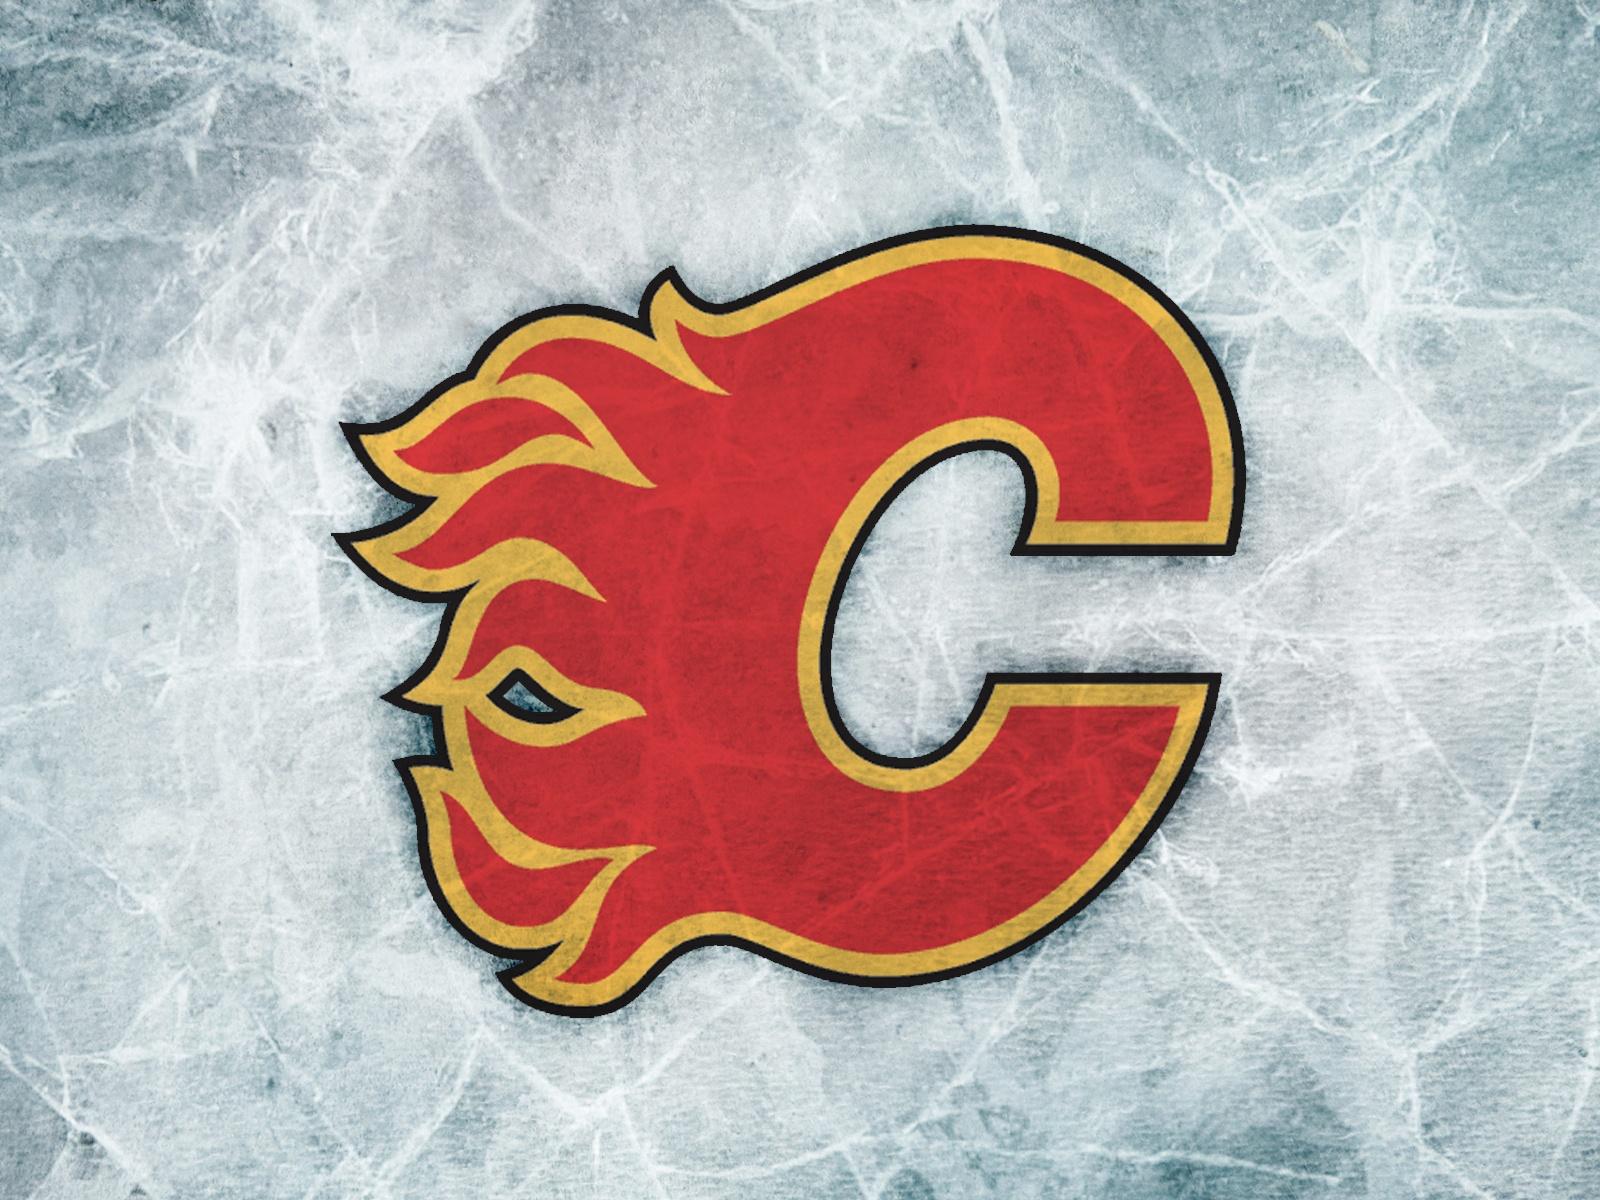 70+] Calgary Flames Wallpaper - WallpaperSafari